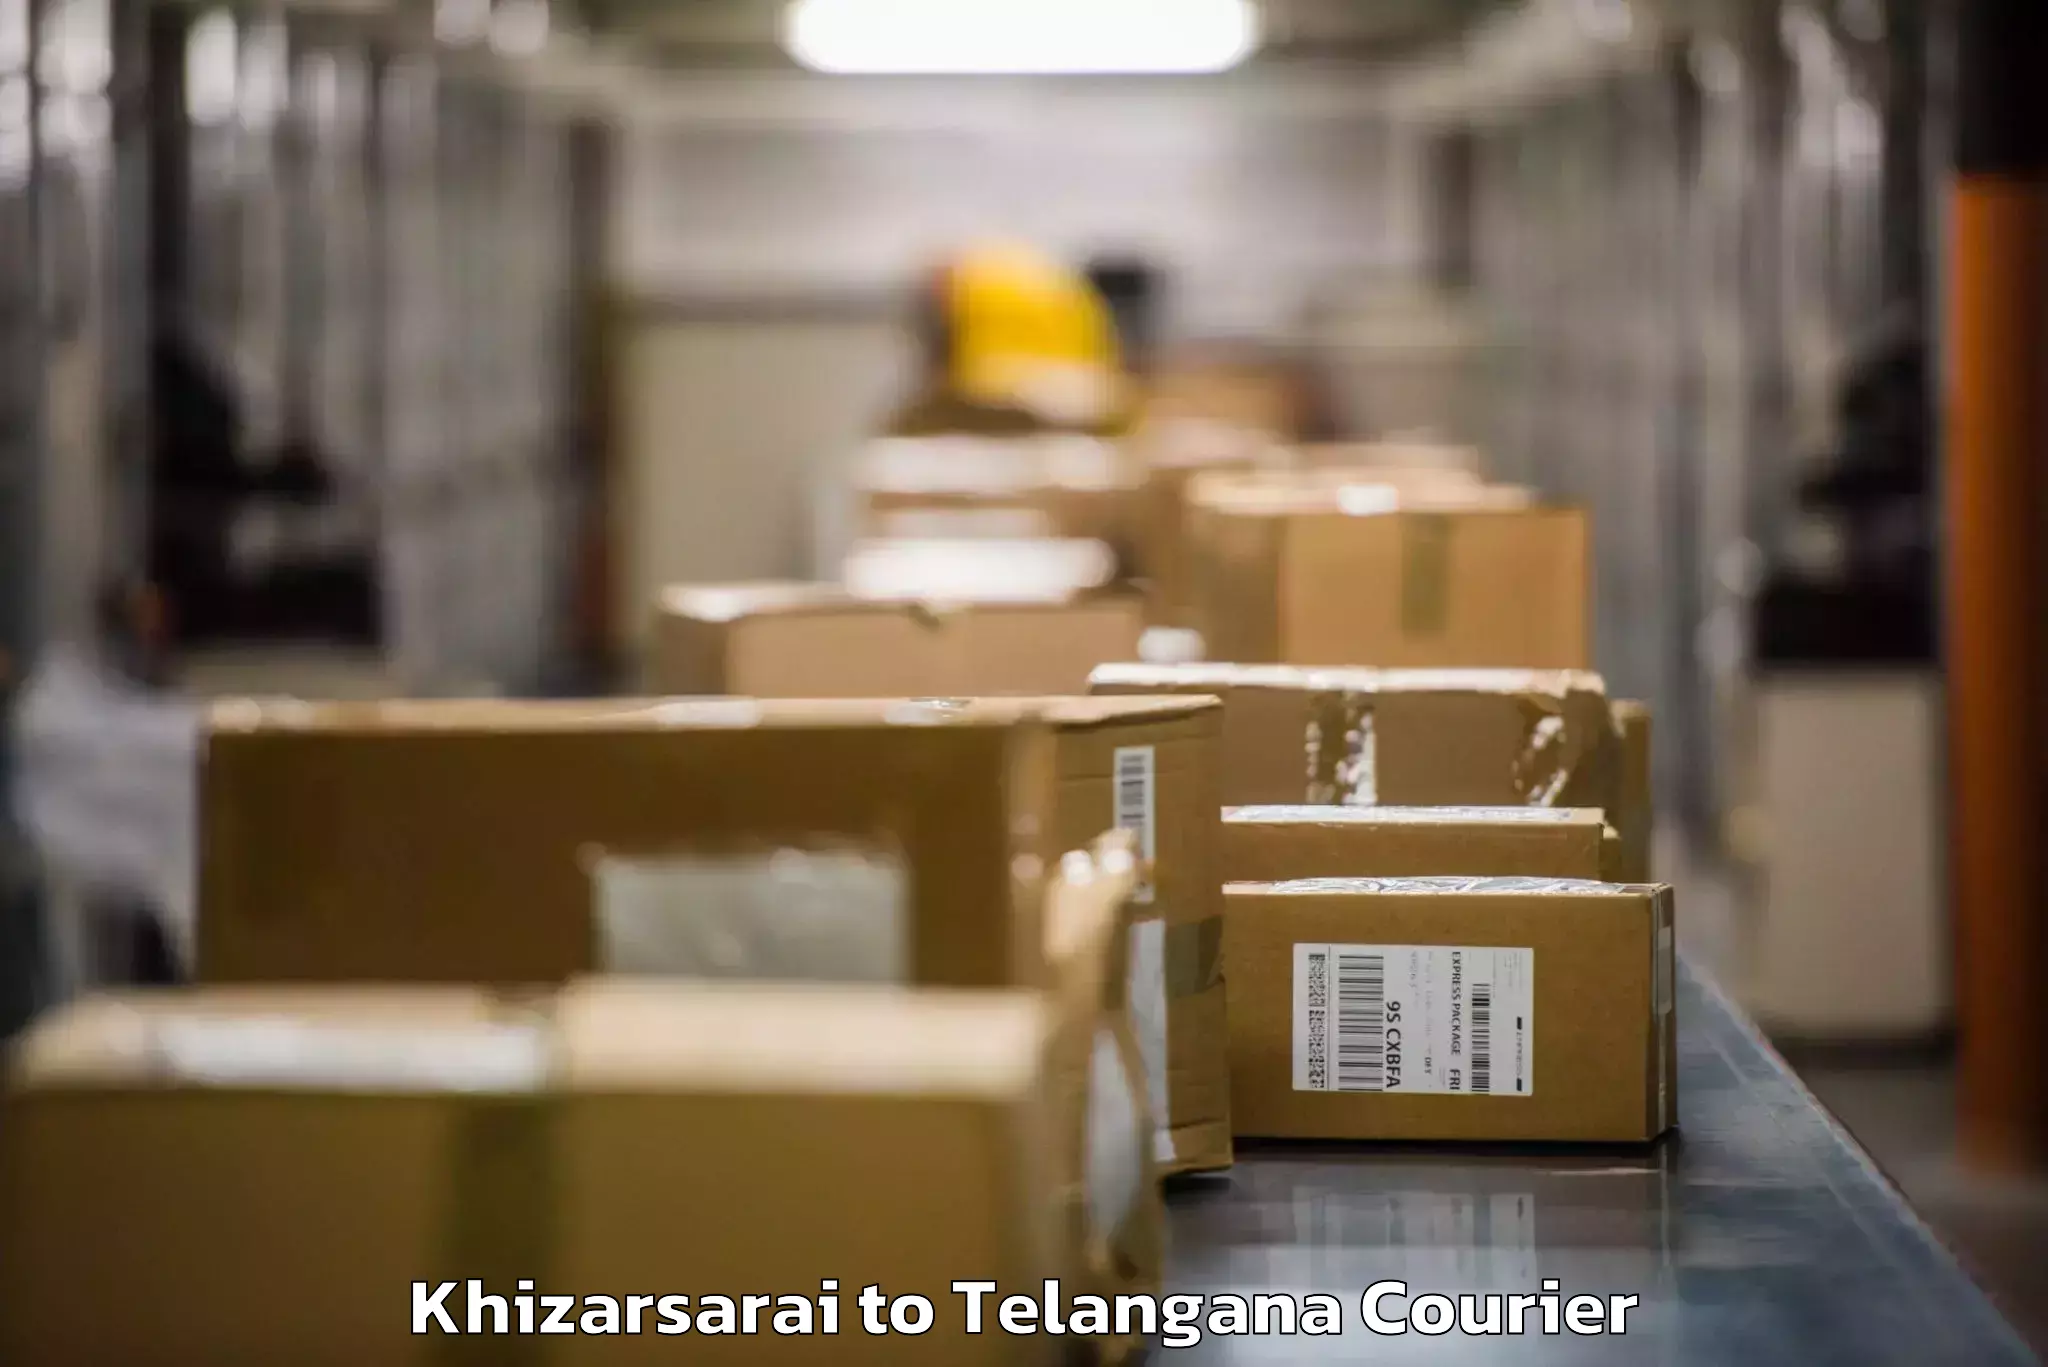 Luggage shipment tracking Khizarsarai to Amangal